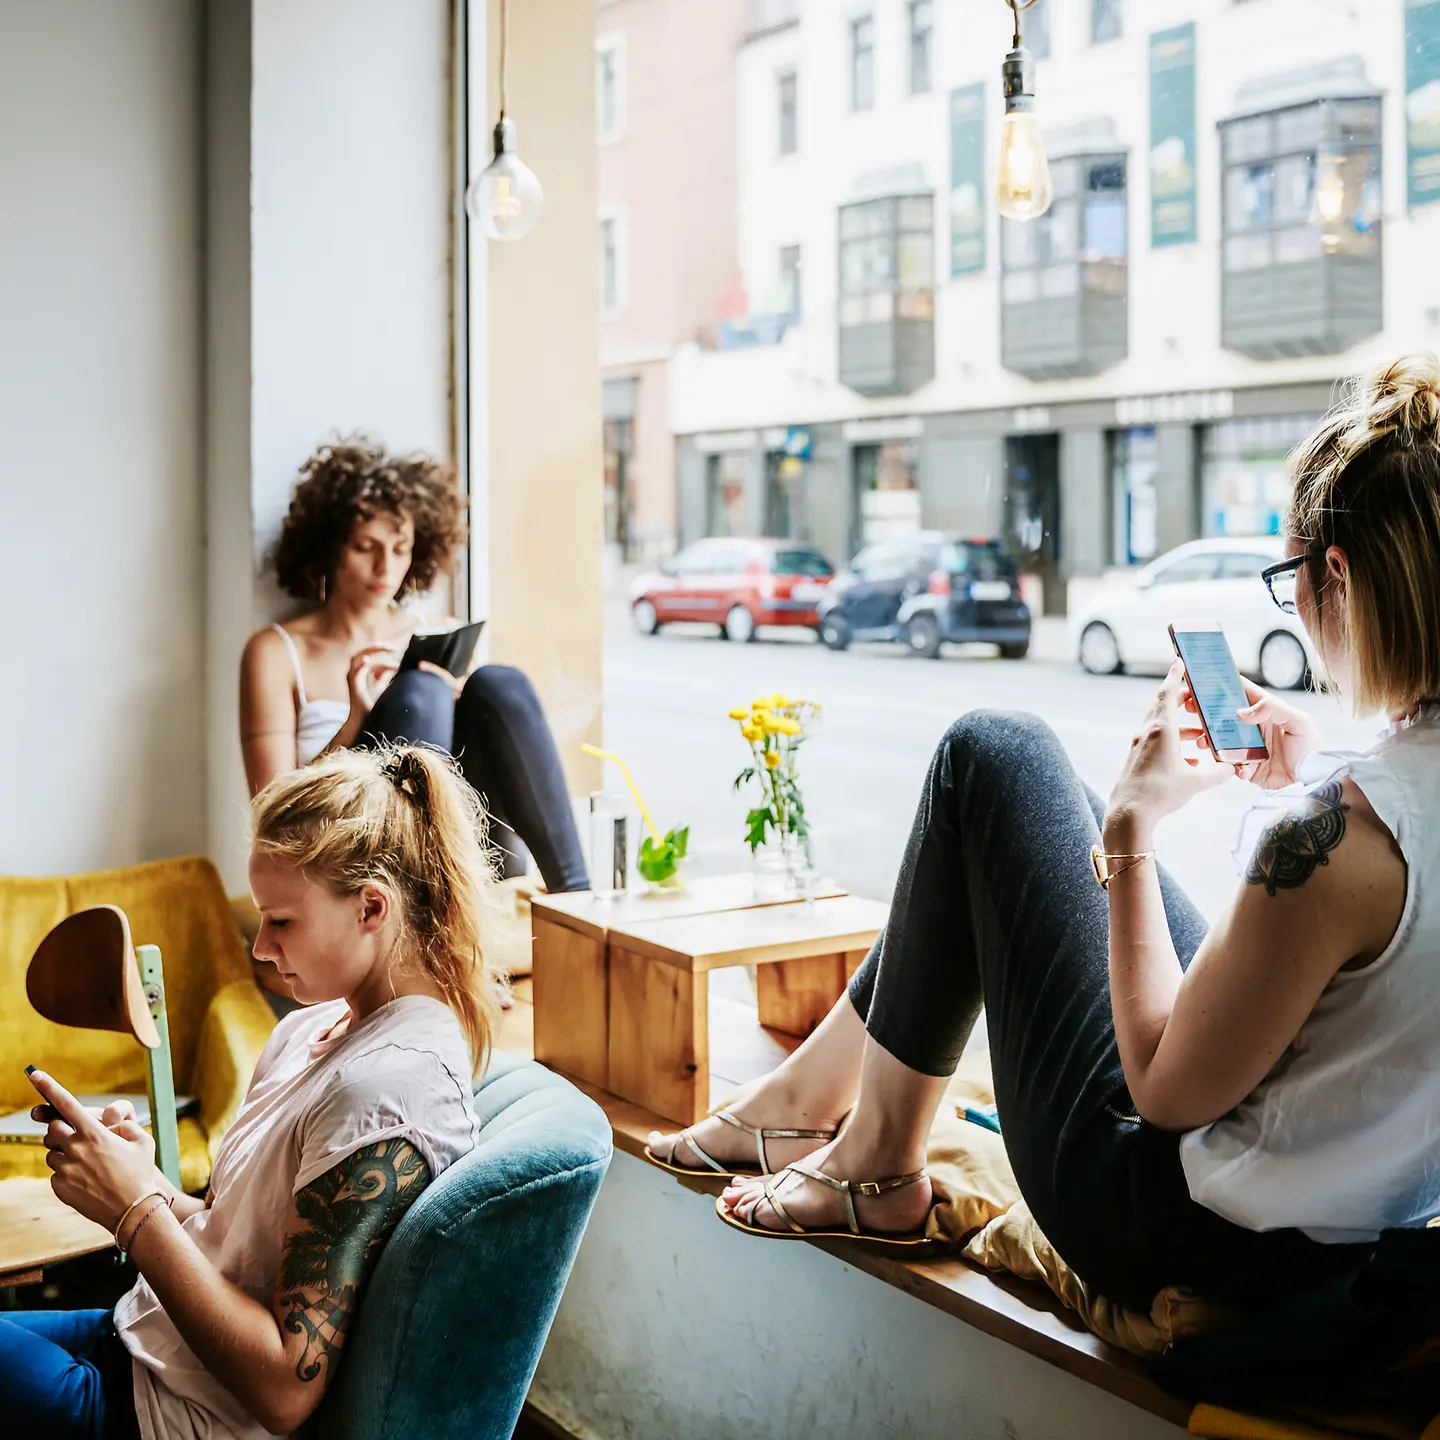 Drei junge Frauen sitzen mit ihren Smartphones in einem Café